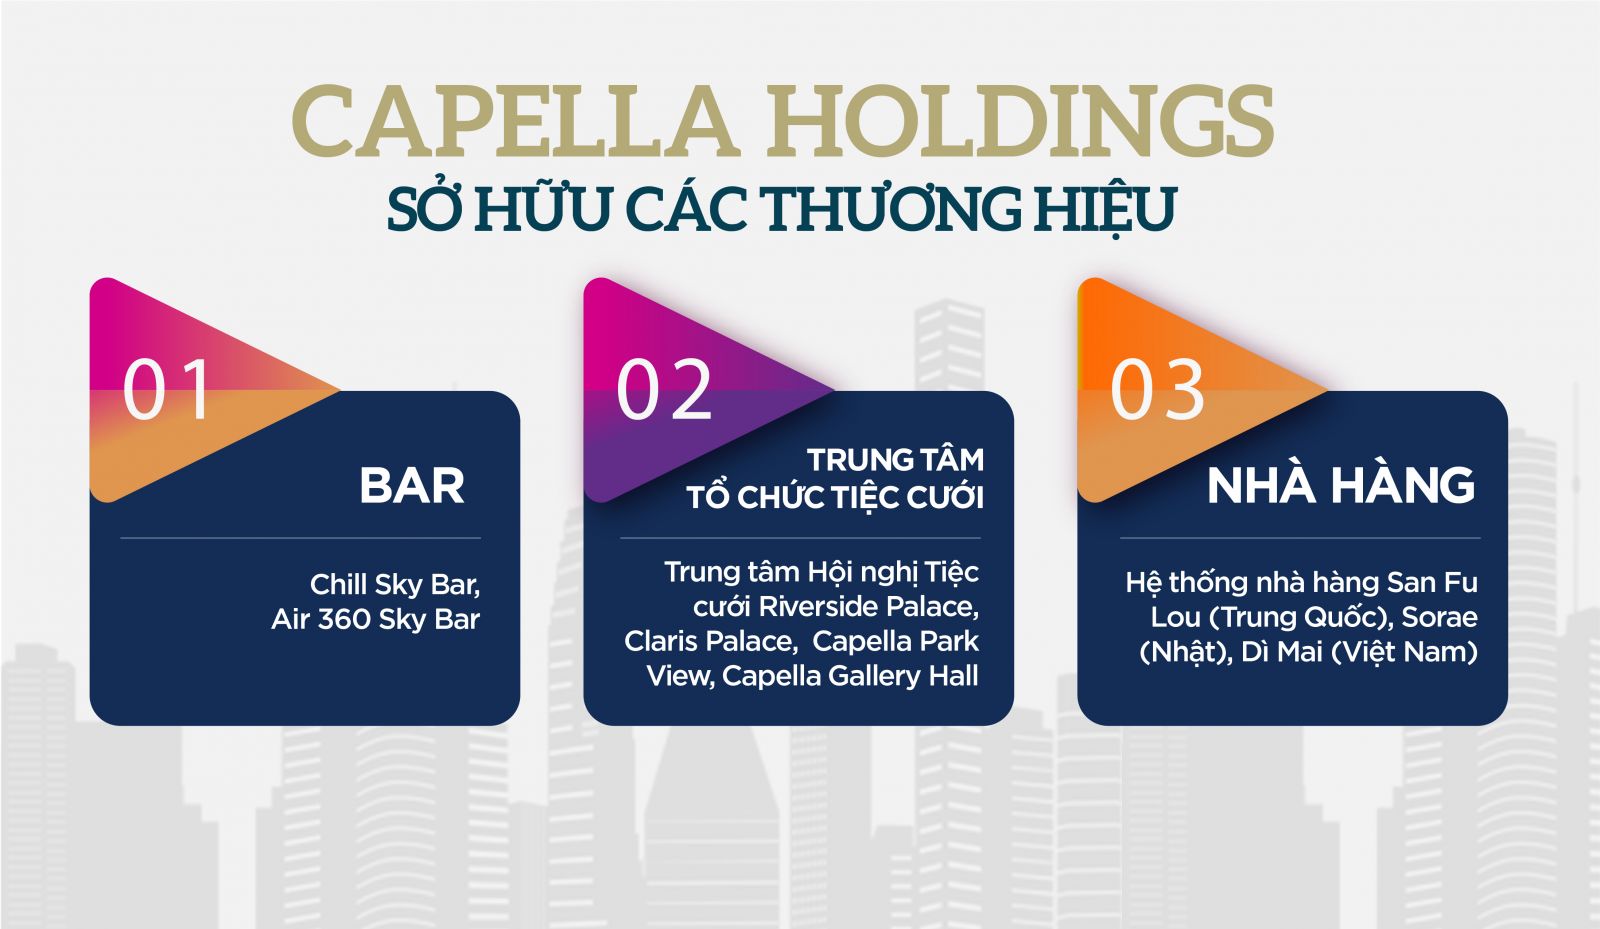 Thương hiệu gắn với tên tuổi doanh nhân Cao Trí và Capella Holdings